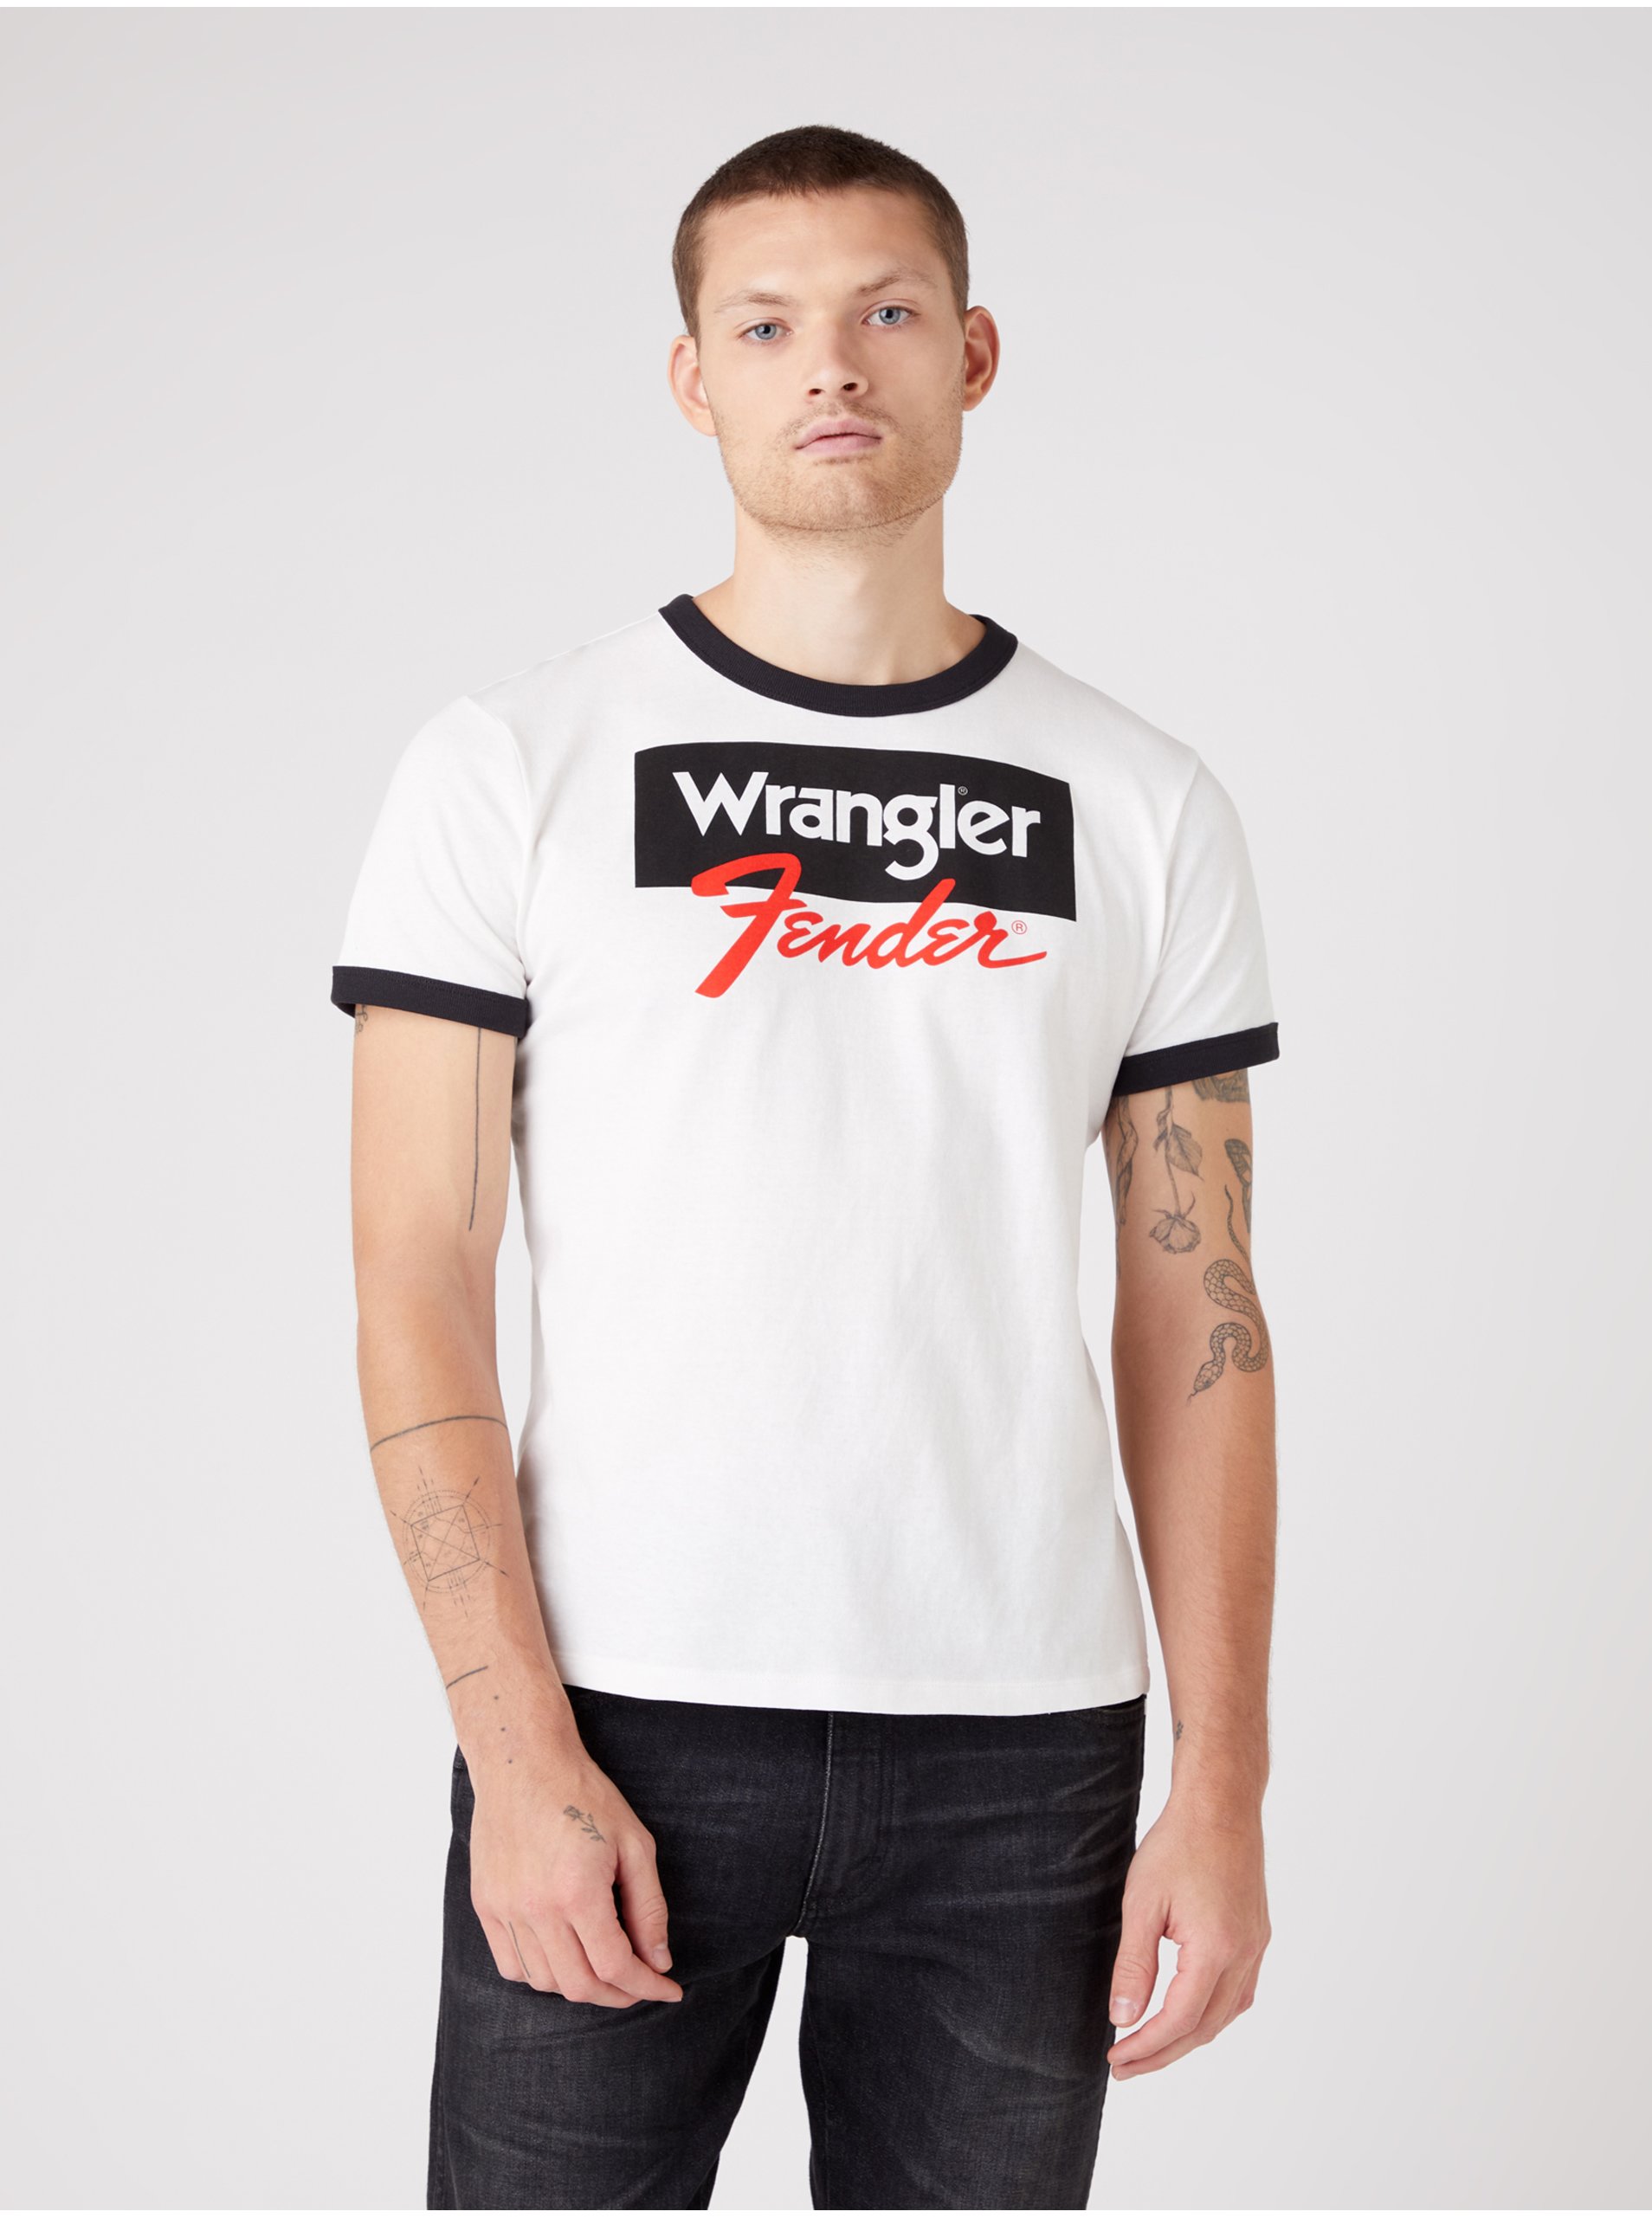 Lacno Čierno-biele pánske tričko s potlačou Wrangler